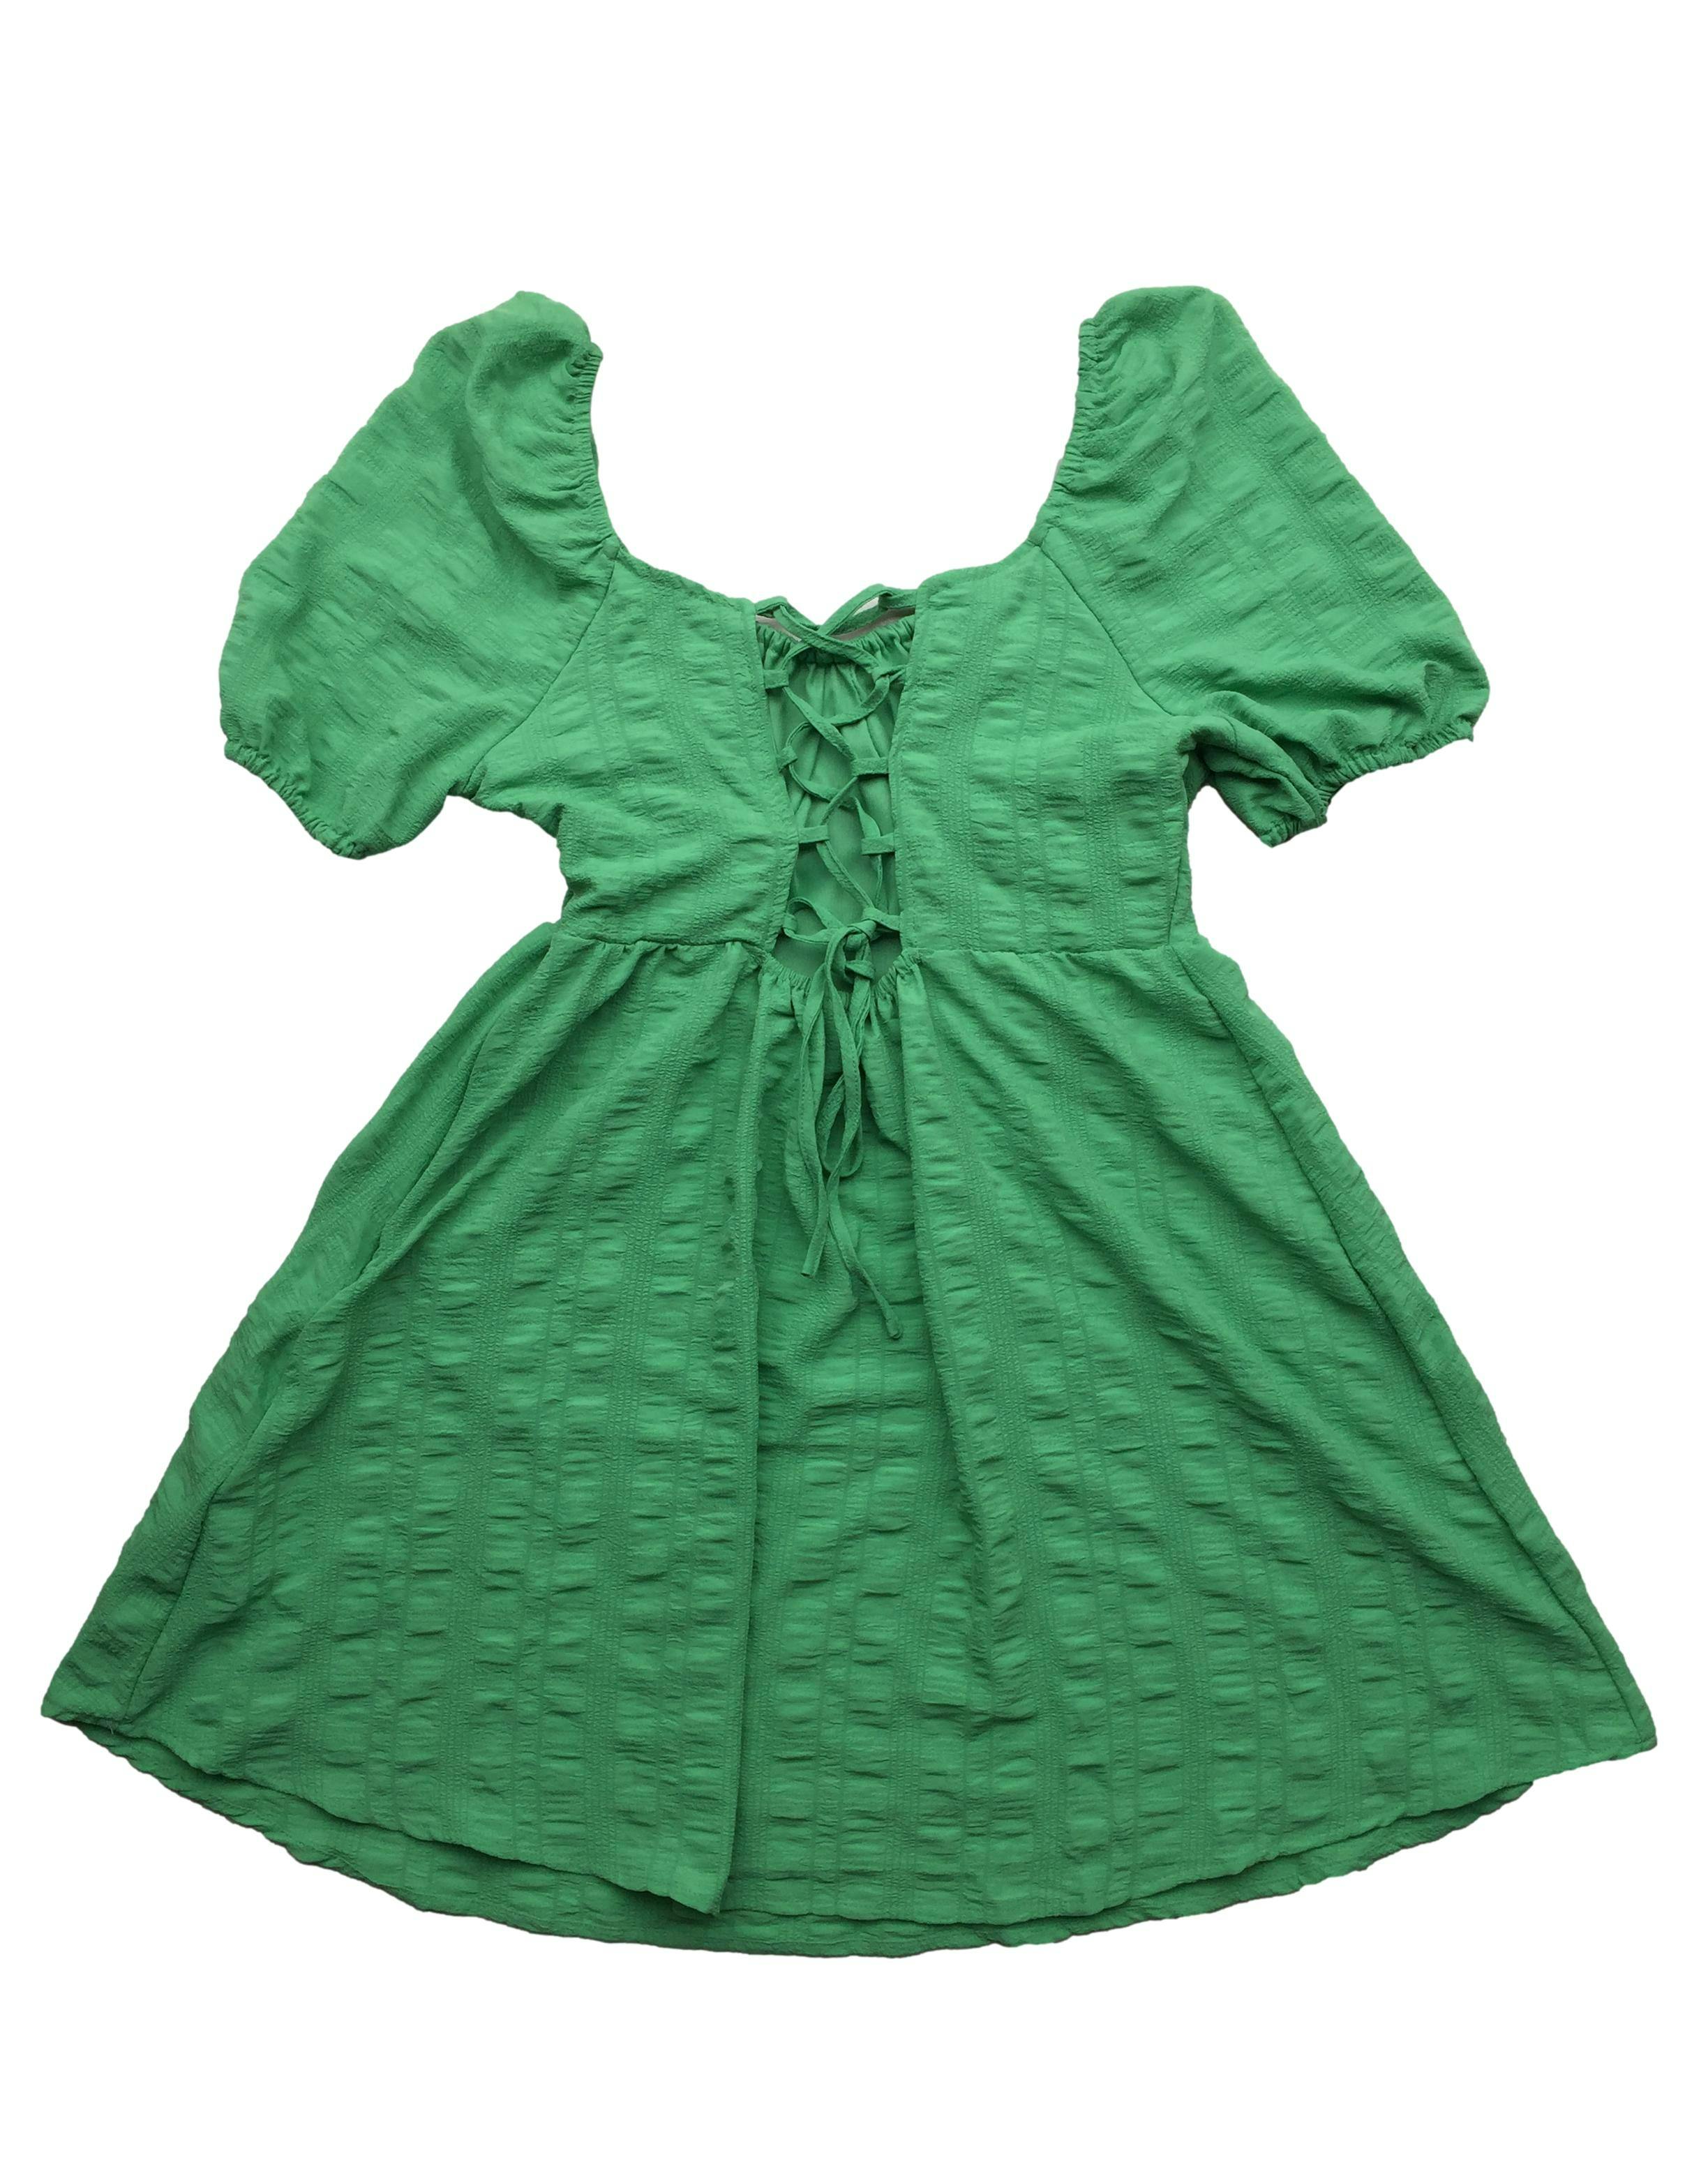 Vestido Sybilla verde, textura de líneas, mangas abullonadas, cierre lateral, forro y tiras posteriores. Busto: 98cm, Largo: 70cm